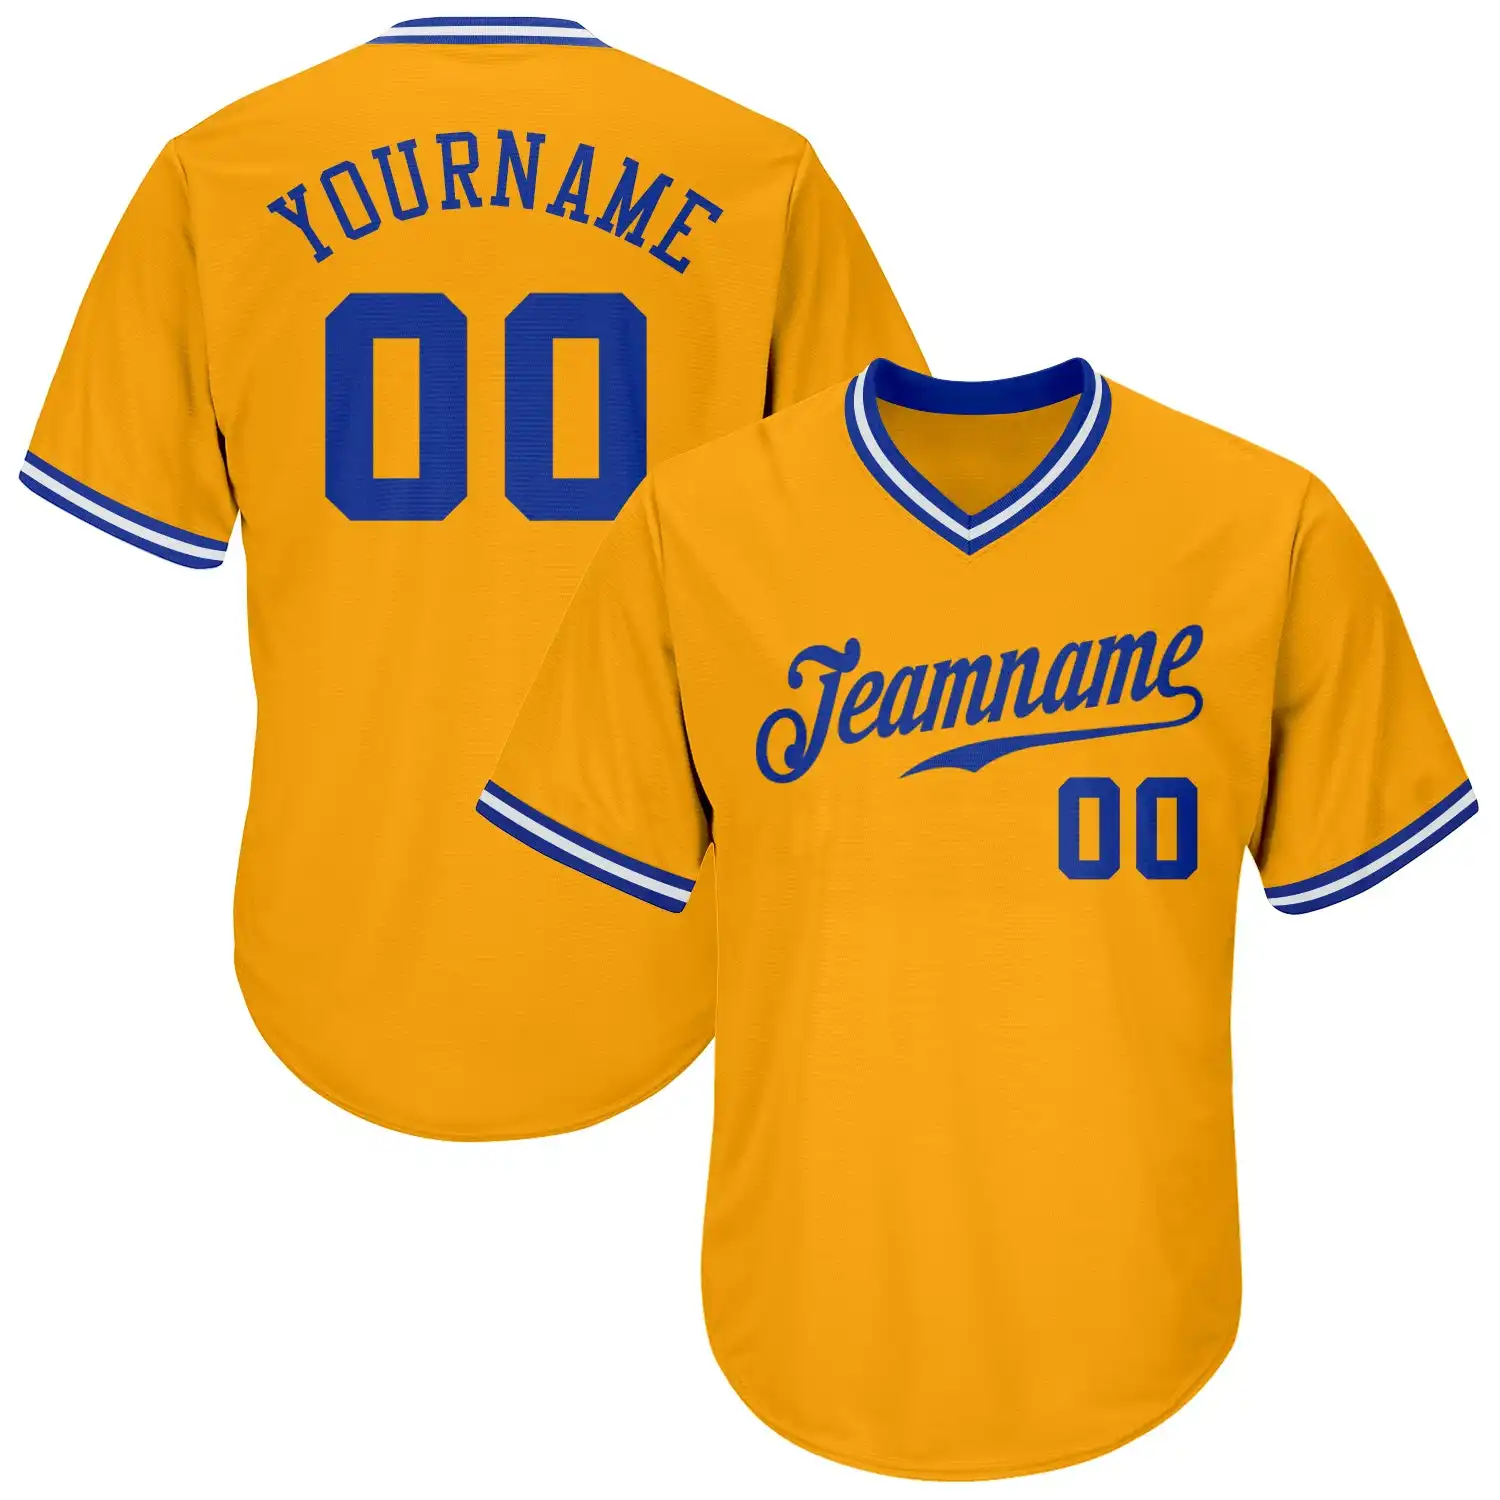 Özel toptan beyzbol hayranları Jersey erkekler için Logo tasarımı ile Unisex ekibi tam yüceltilmiş softbol tişörtü T shirt üniforma